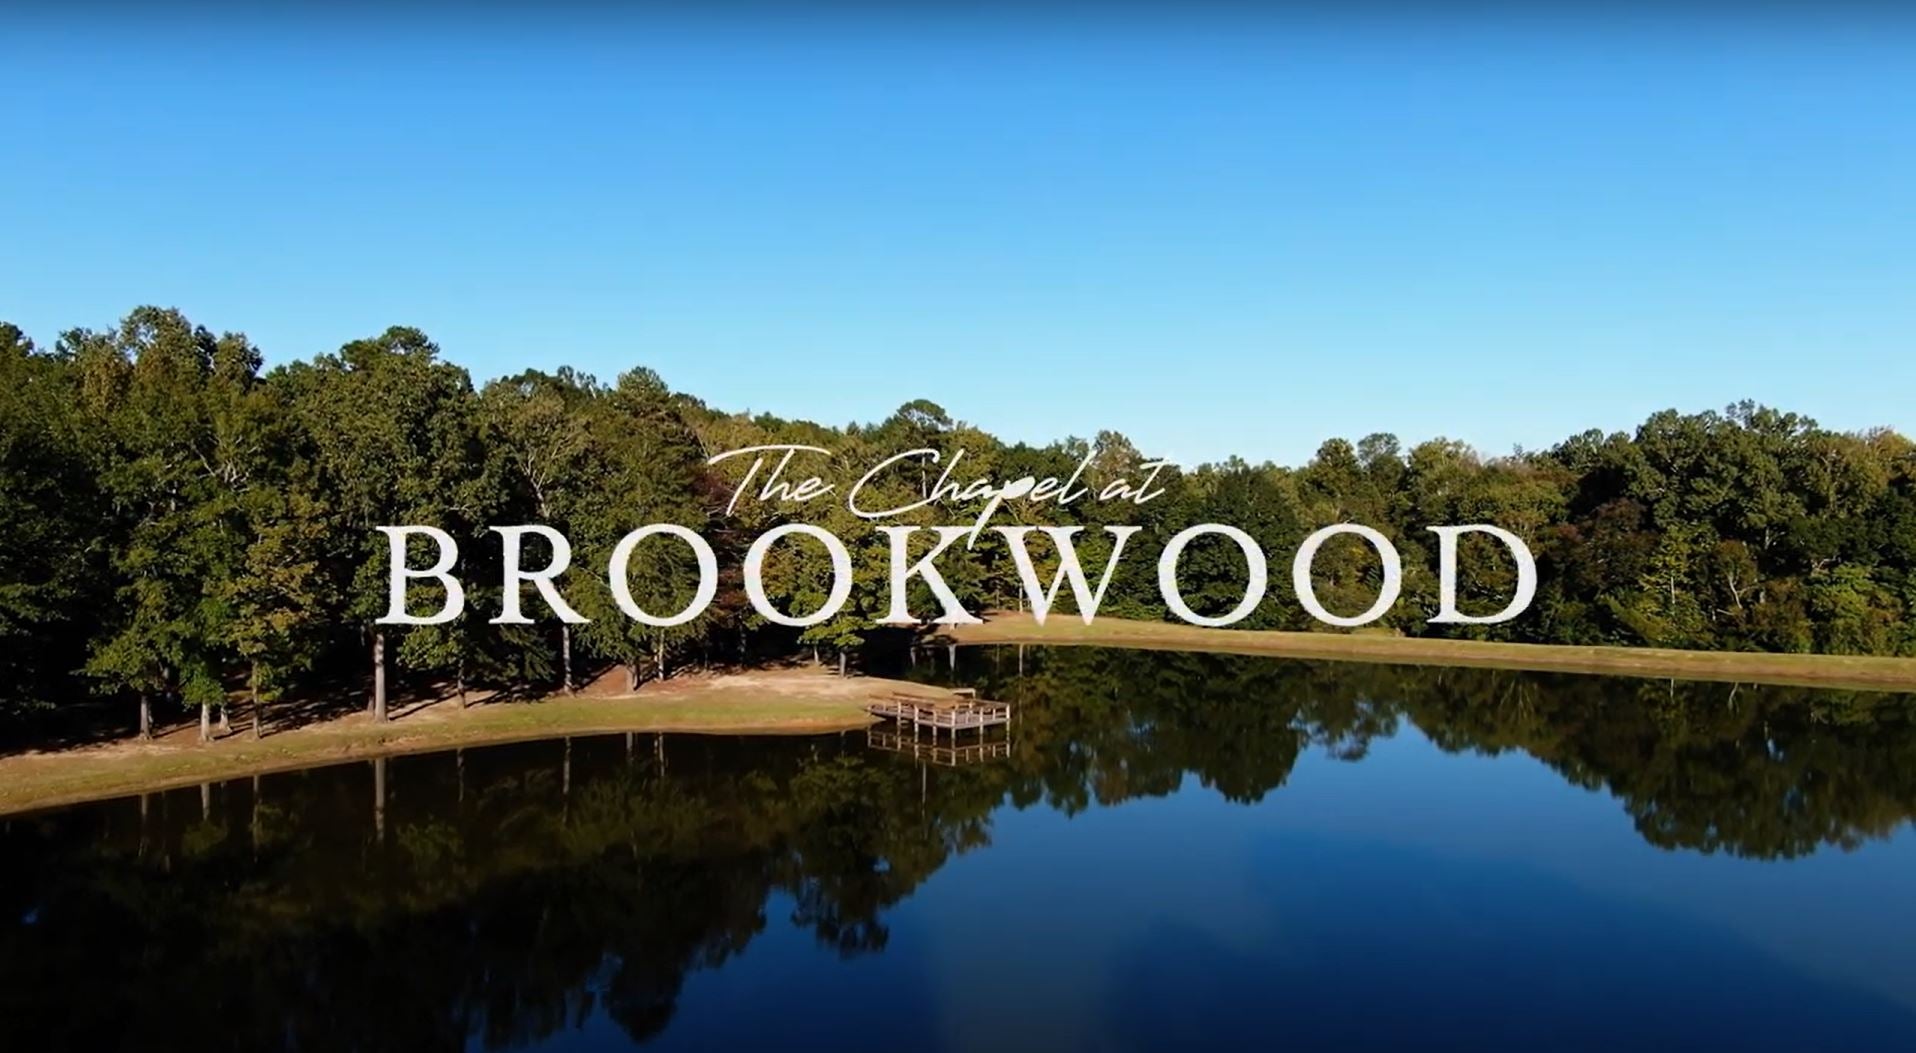 Load video: broookwood venue promo video